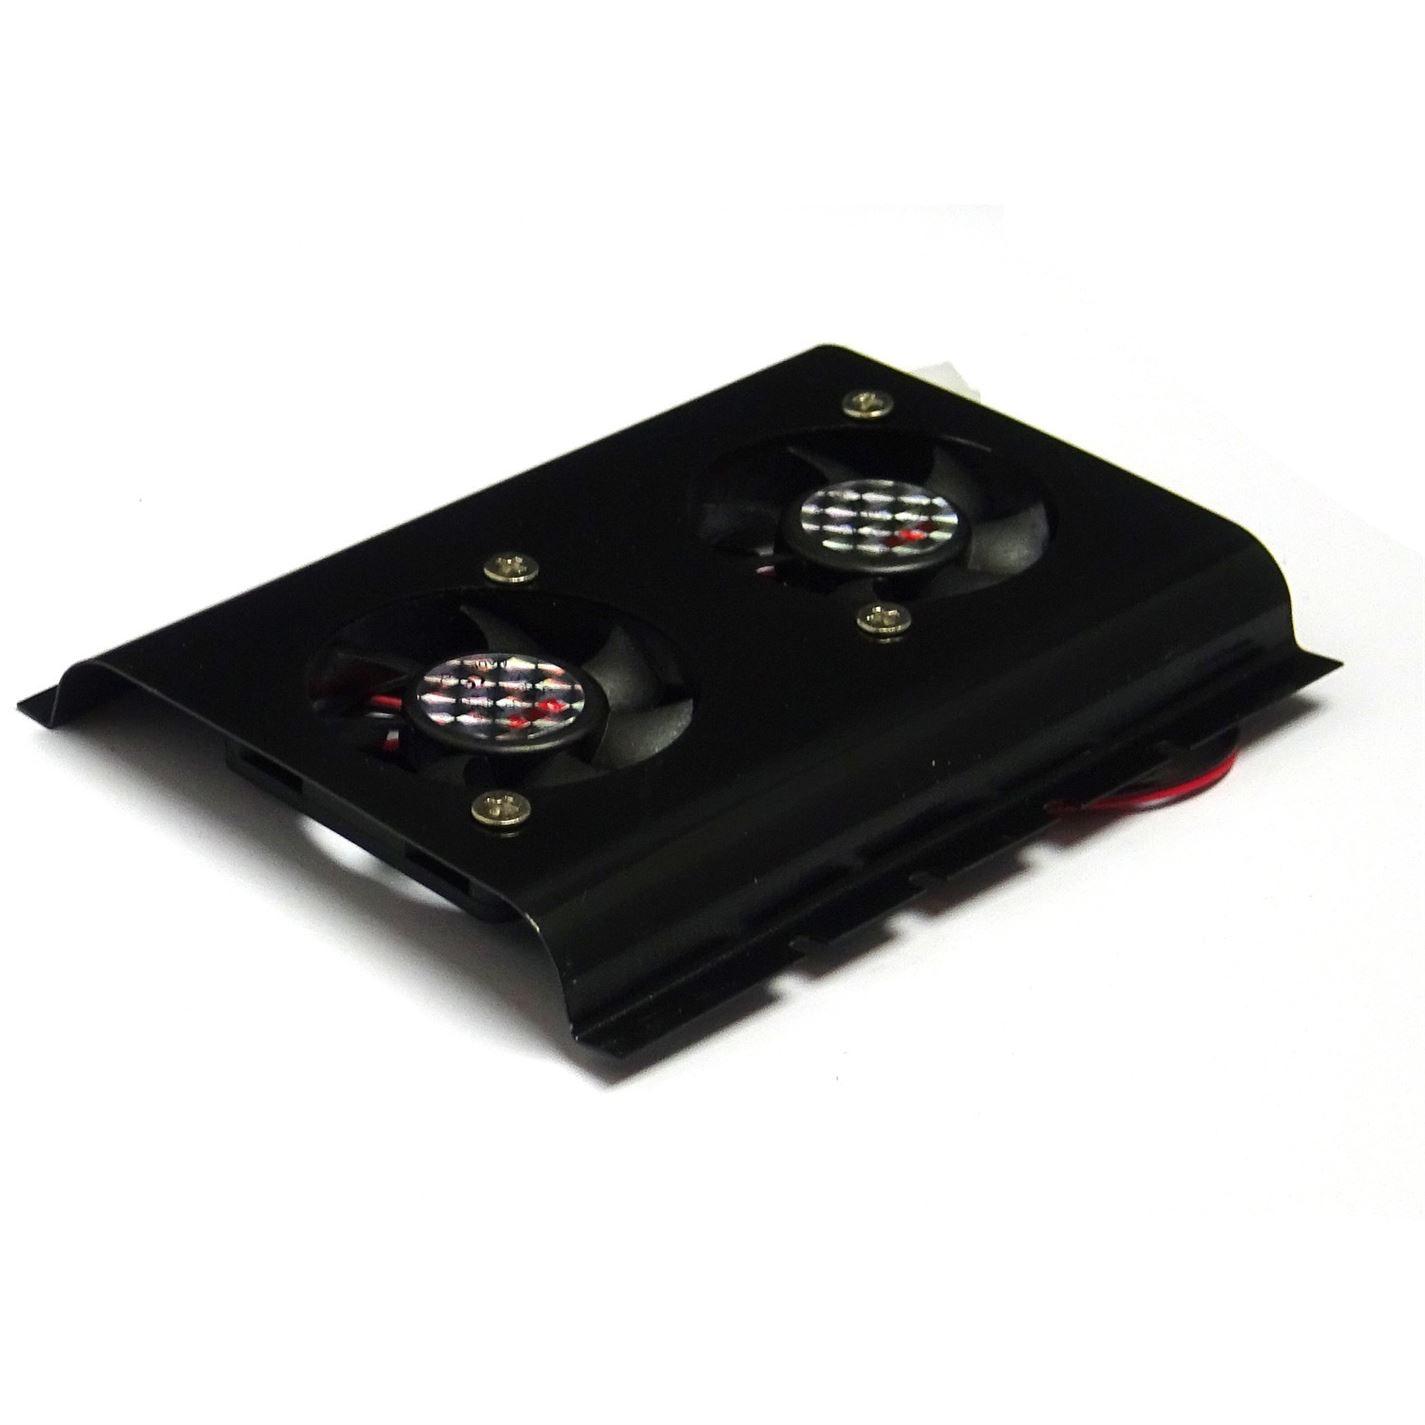 Black 3.5 SATA IDE Hard Disk Drive HDD 2 Fan Cooler for PC - UK Seller